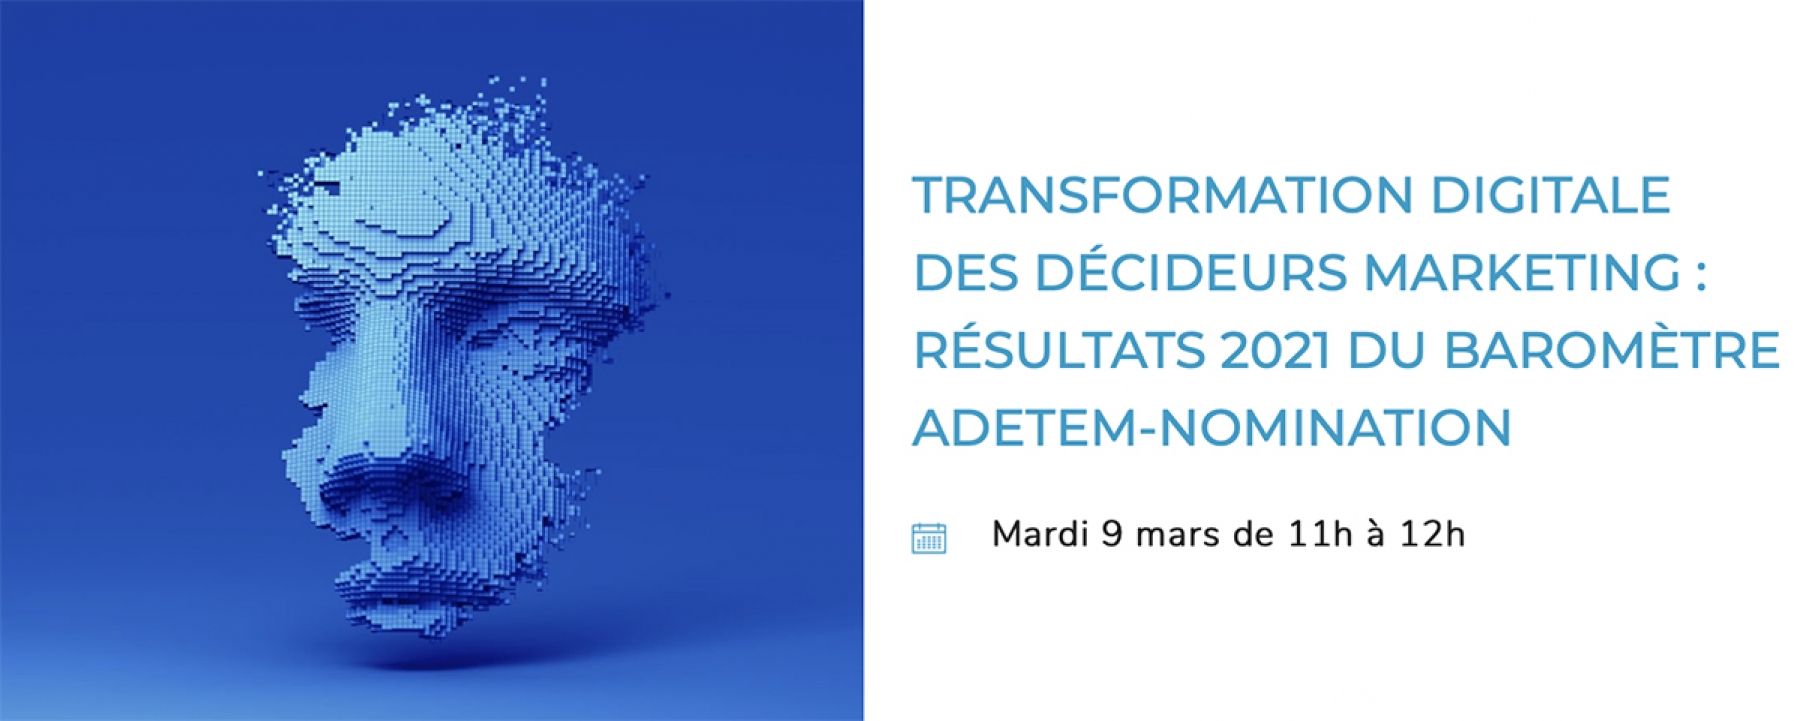 Transformation digitale des décideurs marketing : résultats 2021 du baromètre Adetem-Nomination, organisé par l'Adetem en ligne le 9 mars 2021